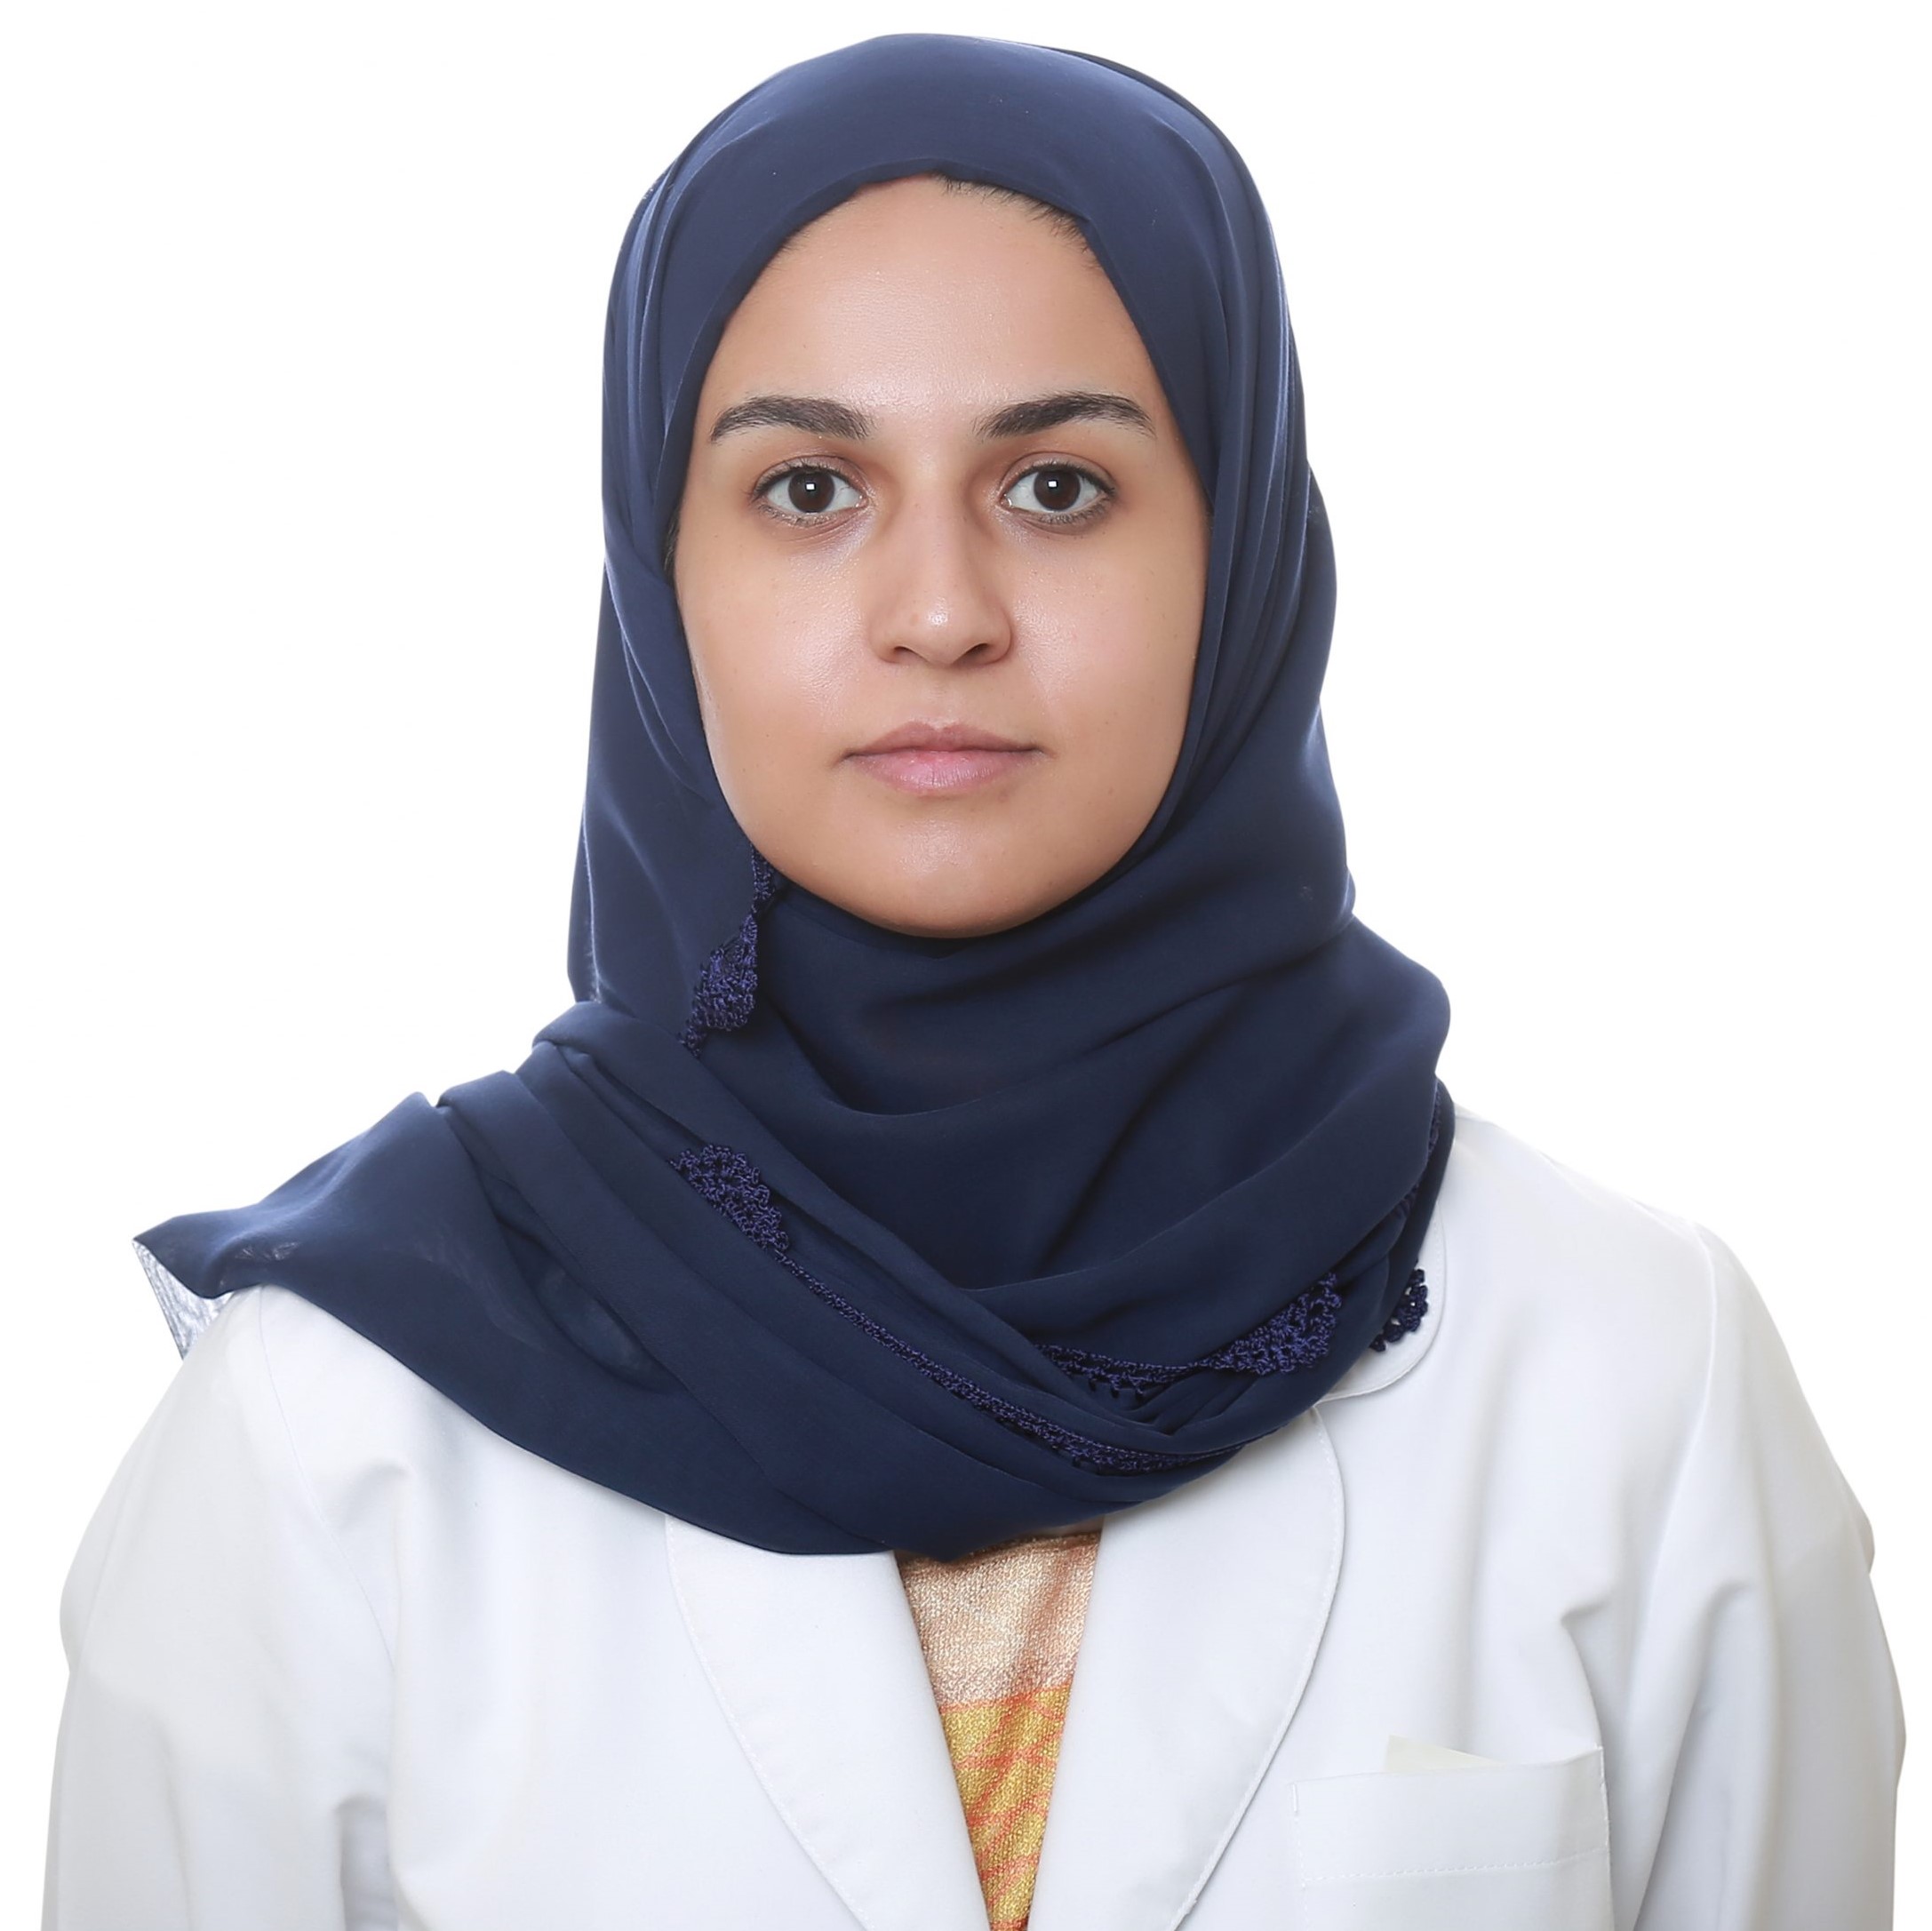 Dr. Zainab Almoosa